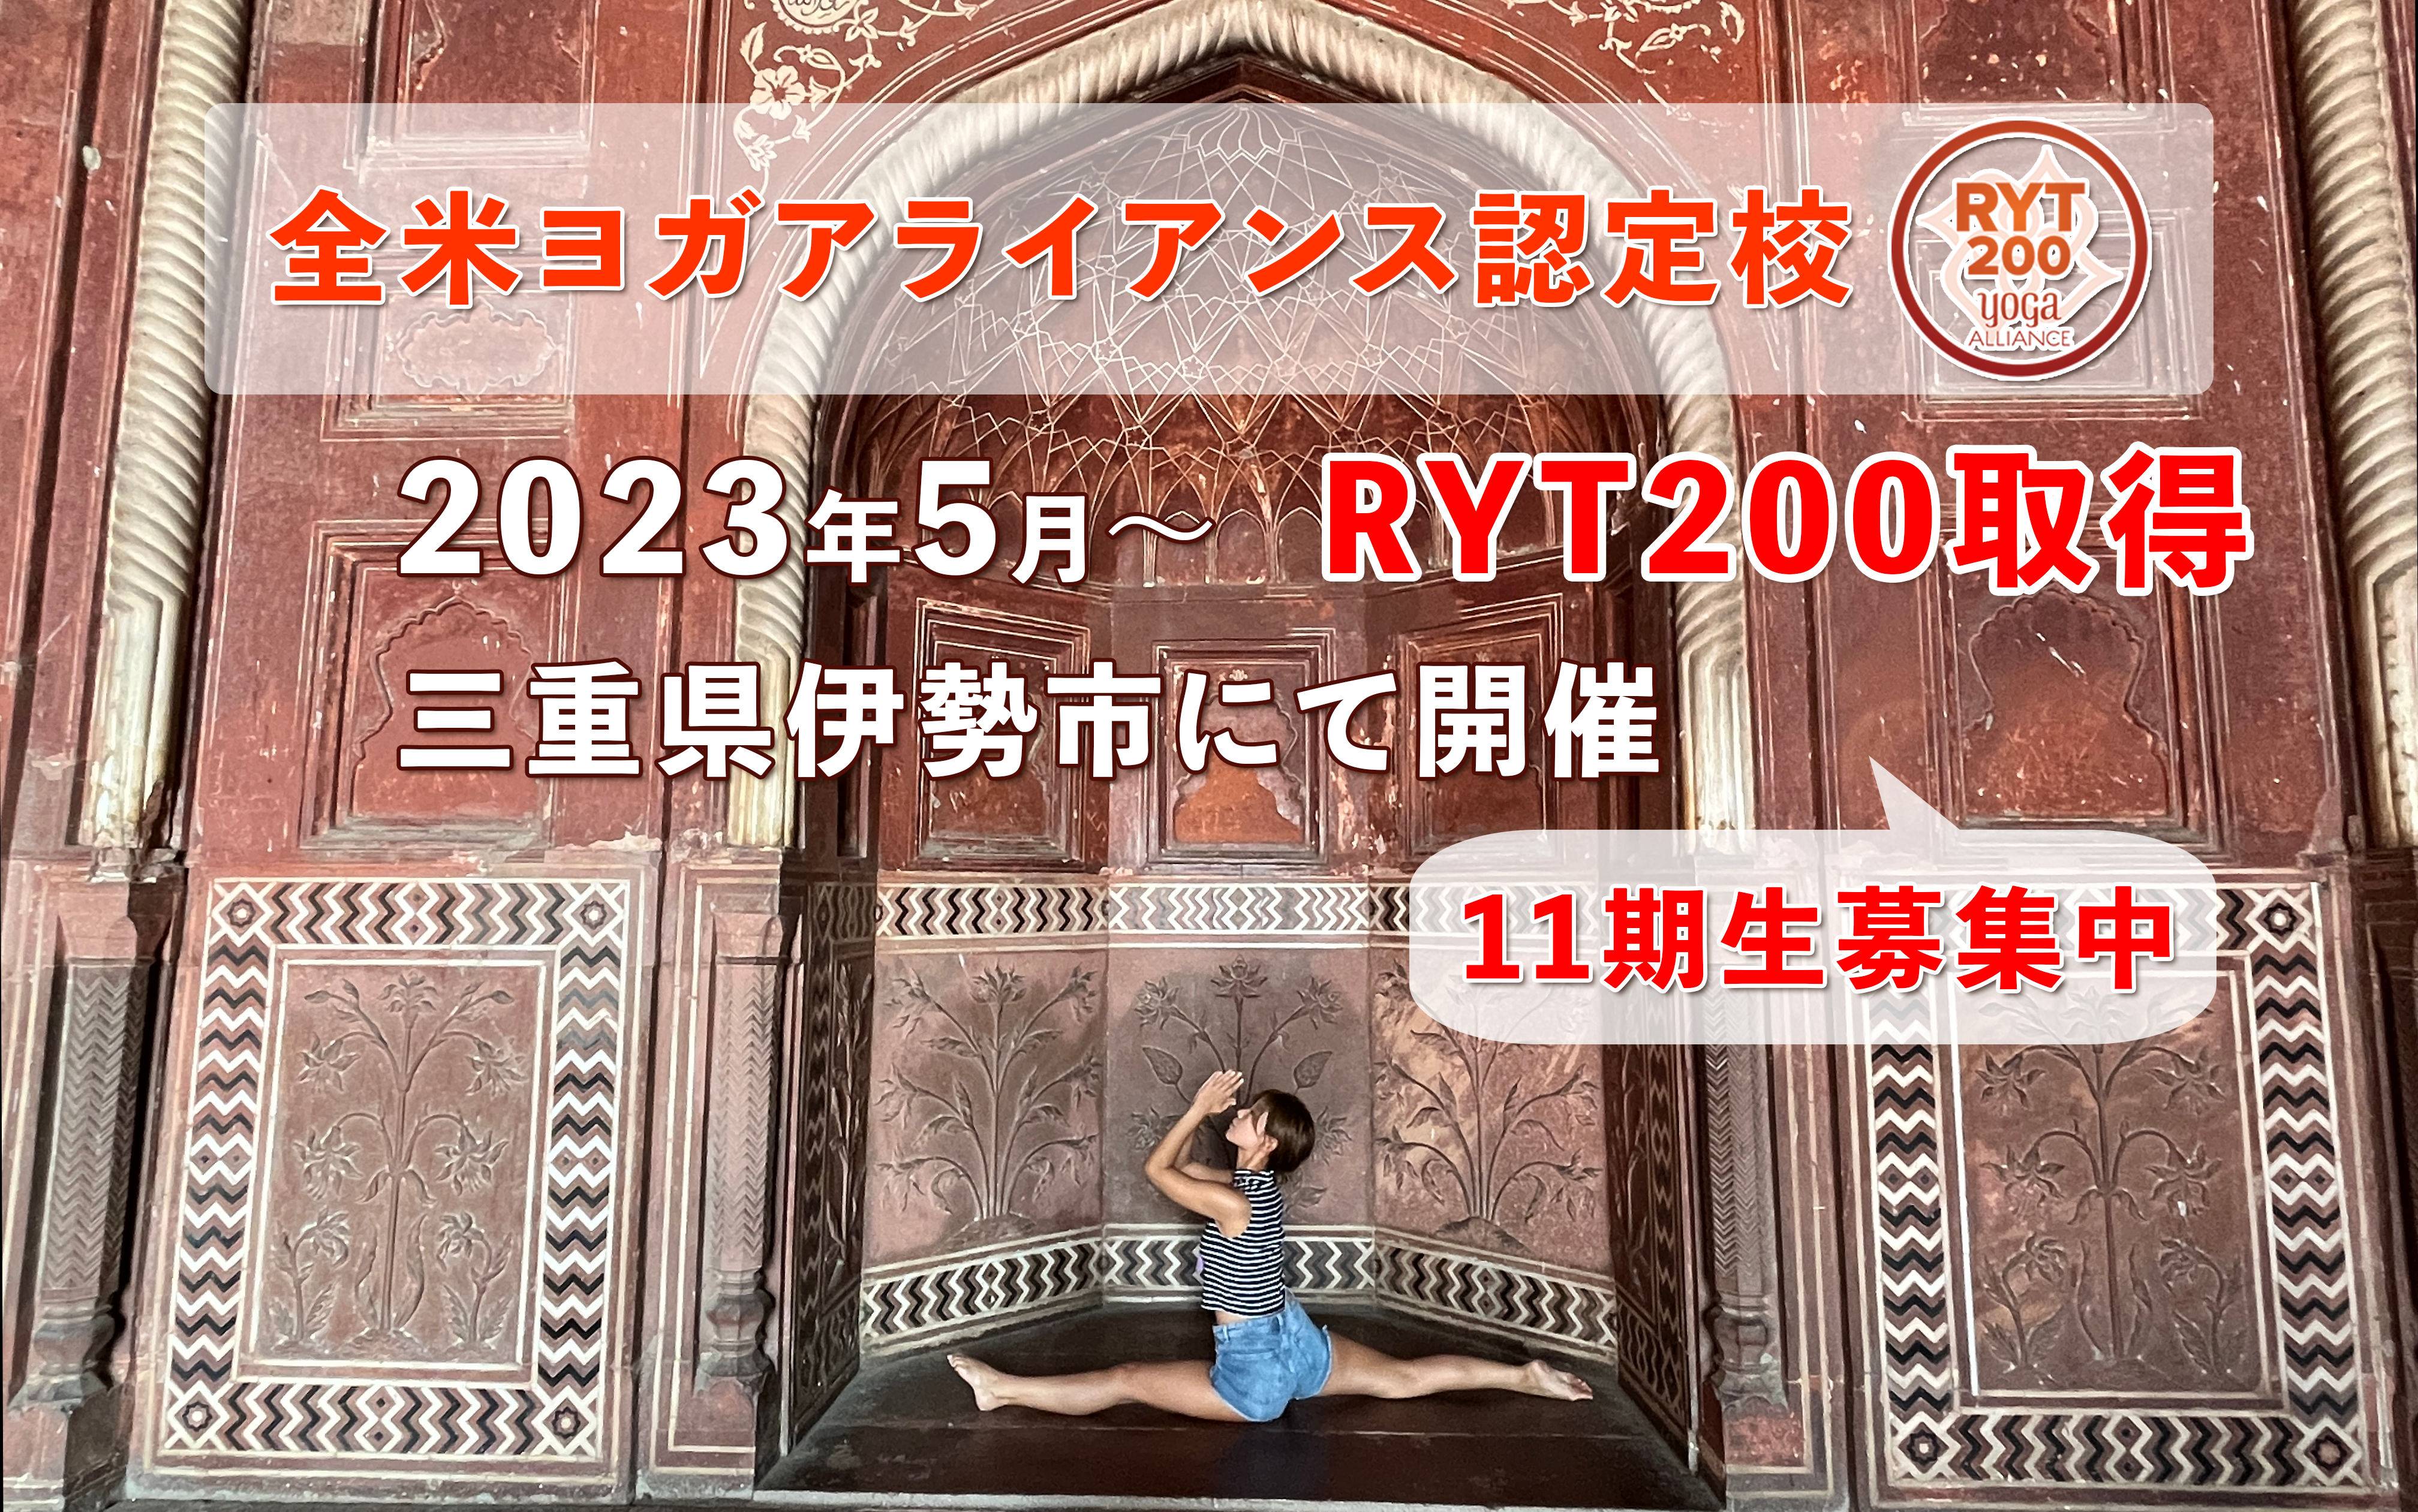 2023年5月より三重県伊勢市_RYT200_ヨガ_ティーチャートレーニング開催